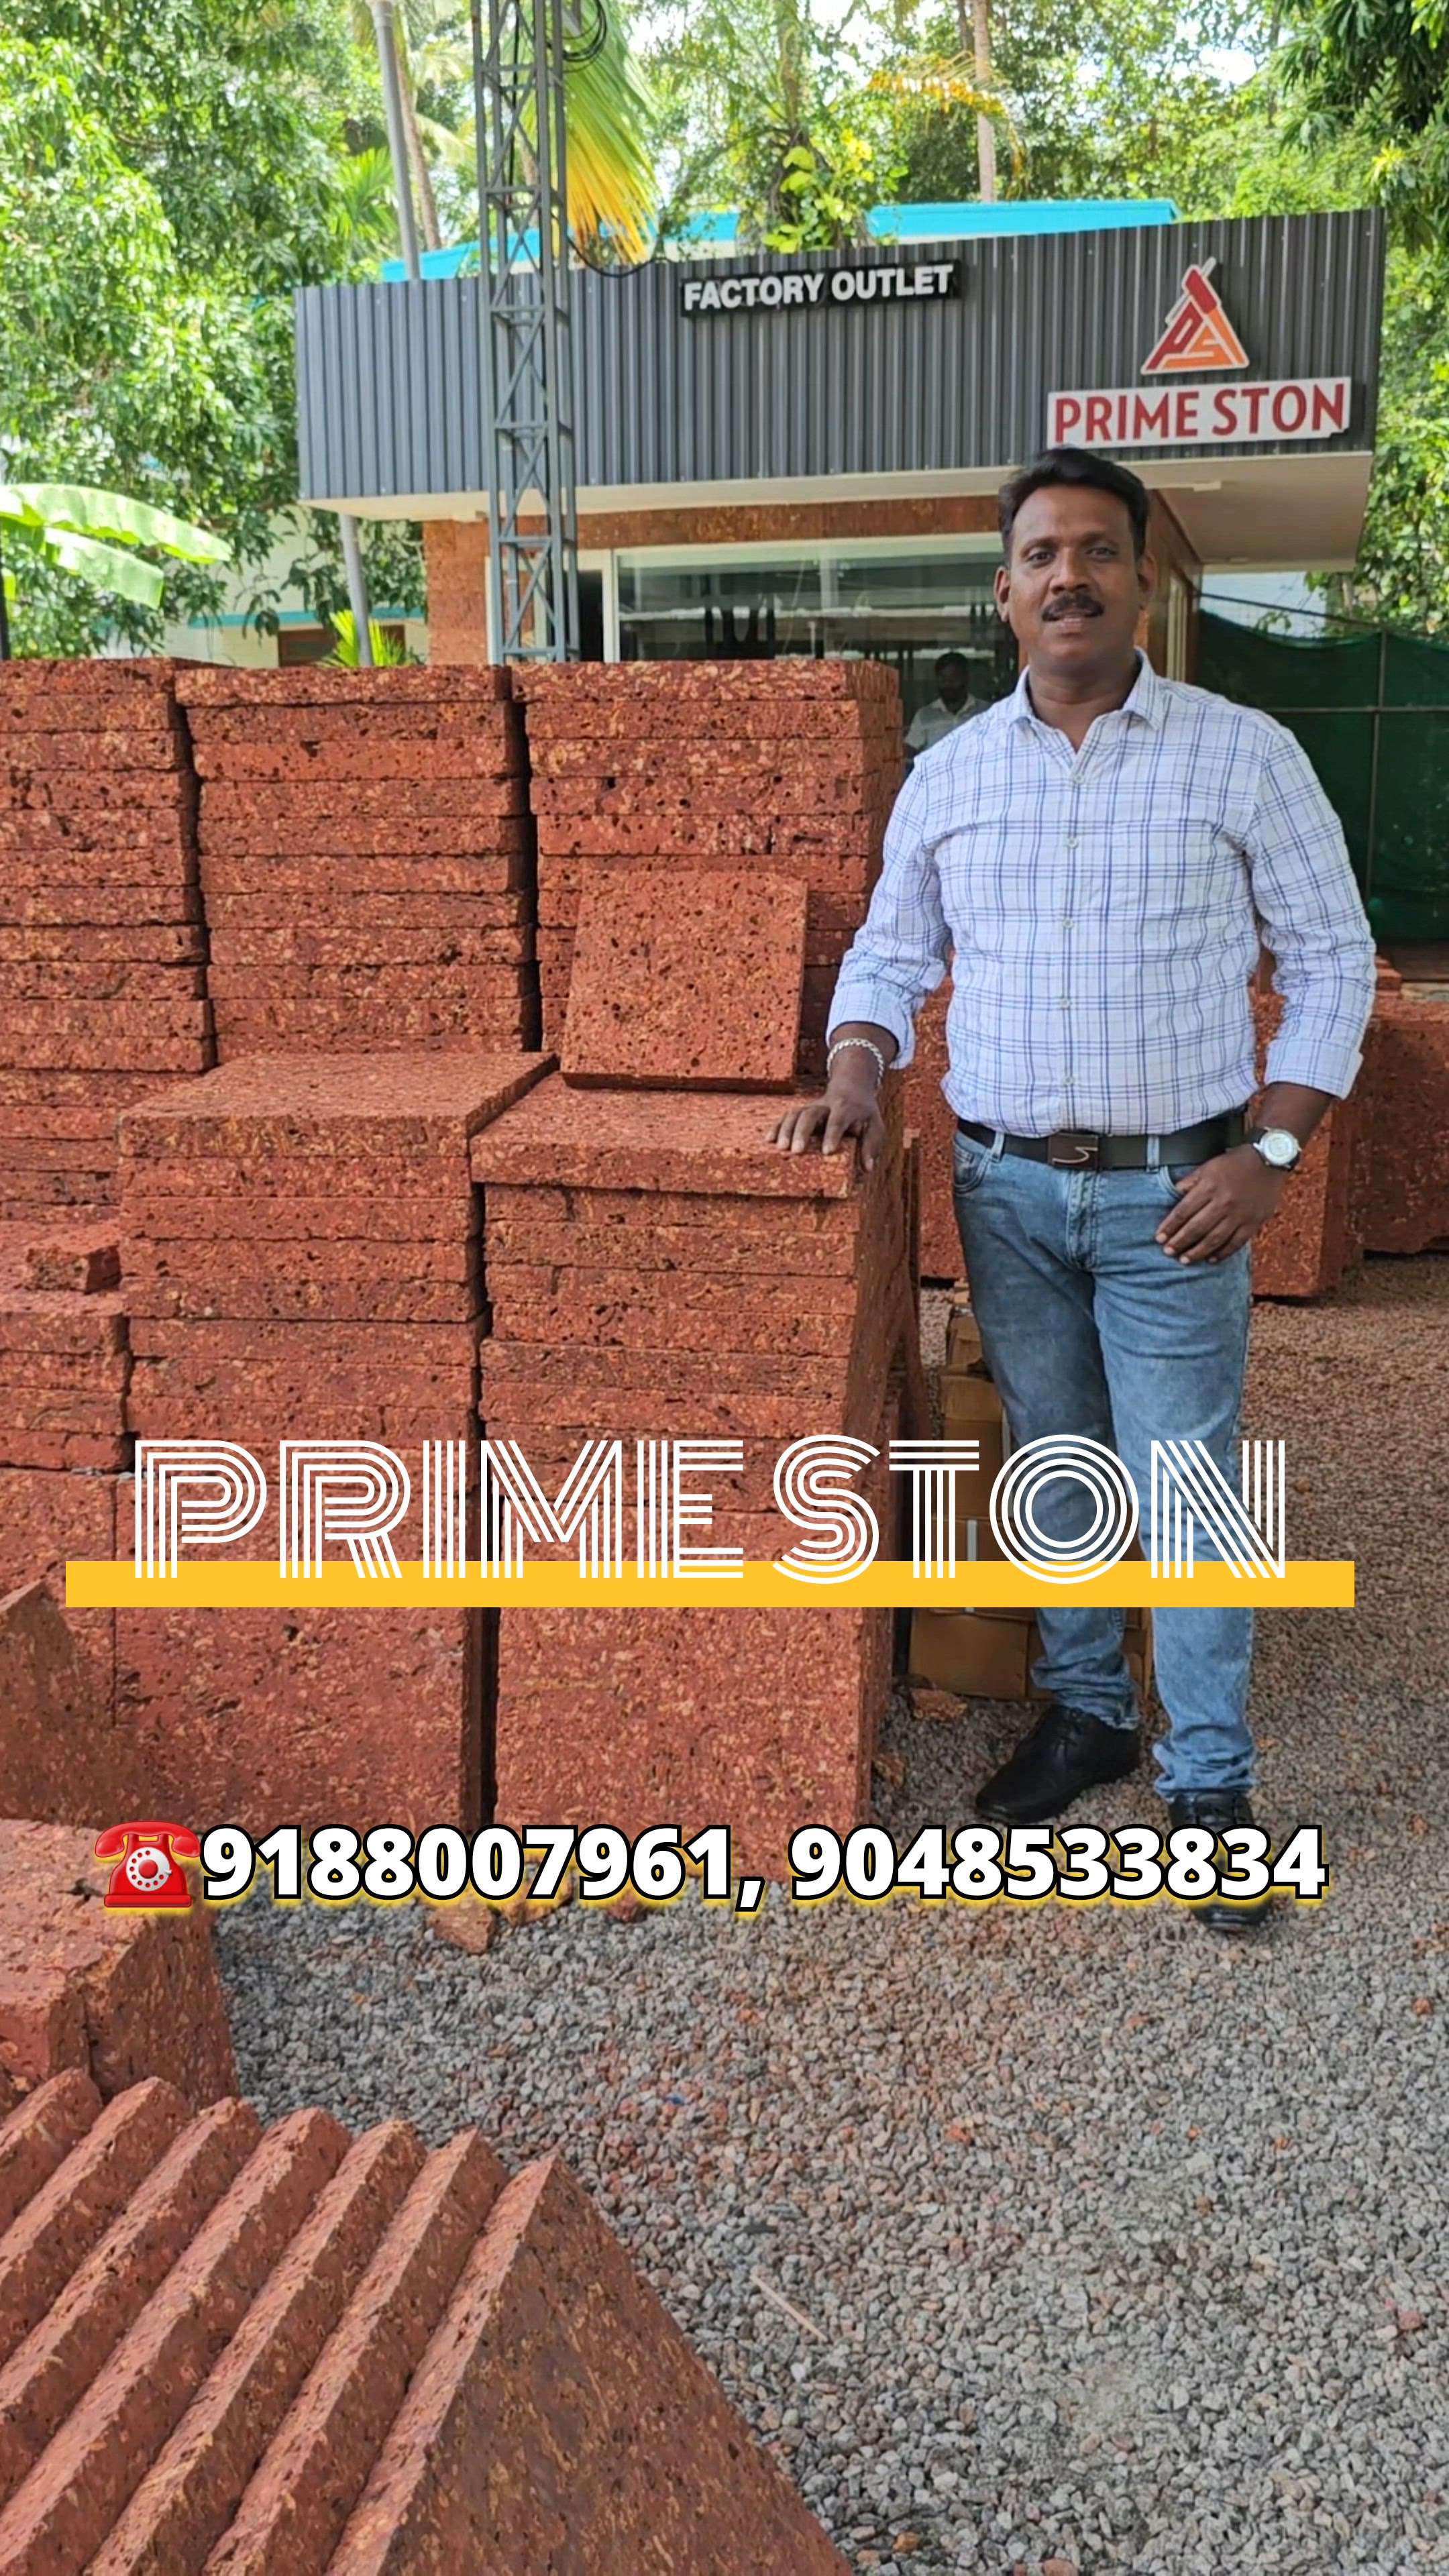 😍മുറ്റം ഏതായാലും കല്ല് നന്നായാൽ മതി 😍

PRIME STON❤️ Laterite Cladding Tiles# Laterite Flooring Slabs# Laterite Paving Stones, Laterite Furniture's, Laterite Monuments, Laterite Single Pillars ...
💚100% Natural Laterite Stone Products Manufacturer and laying contractor 💚
Our Service Available Allover India

Available Sizes....
12/6,12/7,15/9,18/9,21/9,24/9 inches 20 mm thickness...
Customized sizes also available...

Contact - 7306 706 542, 9188 007 961
 

primelaterite@gmail.com 
www.primestone.co. in
https://youtu.be/CtoUAPbgX08
 #Architect  #BuildingSupplies  #nwework  #newmodal  #TraditionalHouse  #trendingdesign